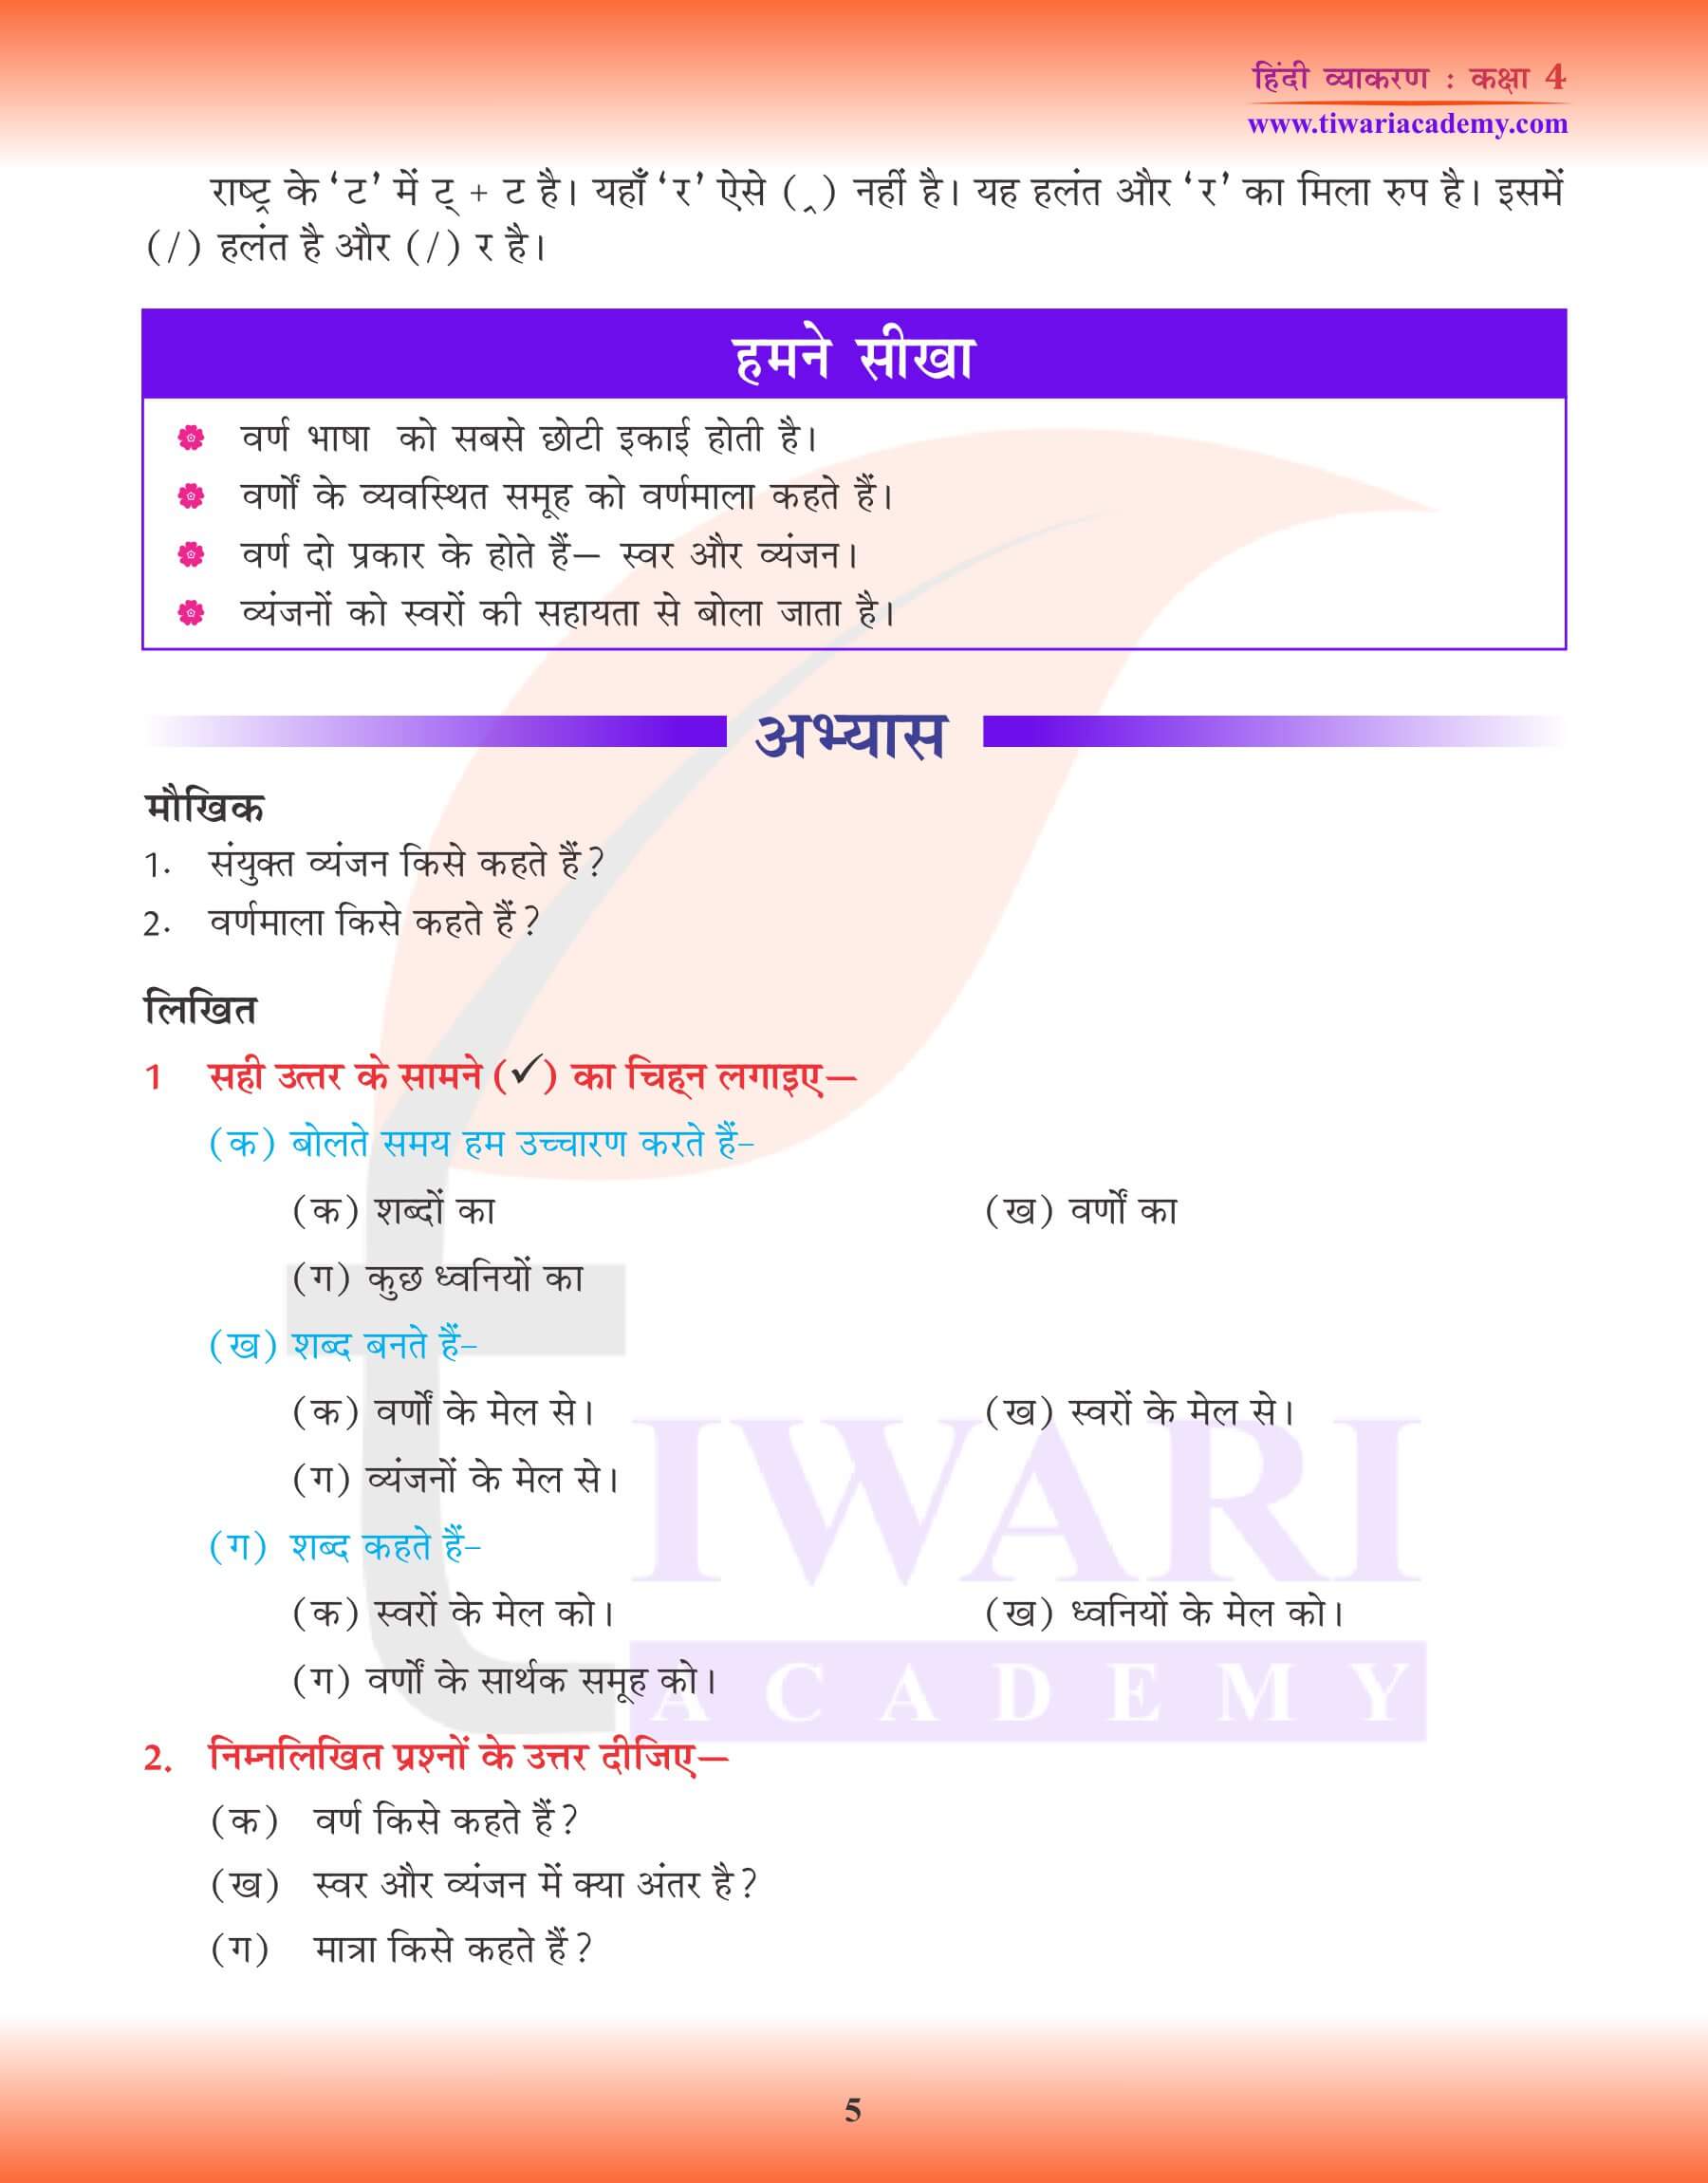 कक्षा 4 हिंदी व्याकरण में वर्ण, वर्णमाला और मात्रा के उदाहरण